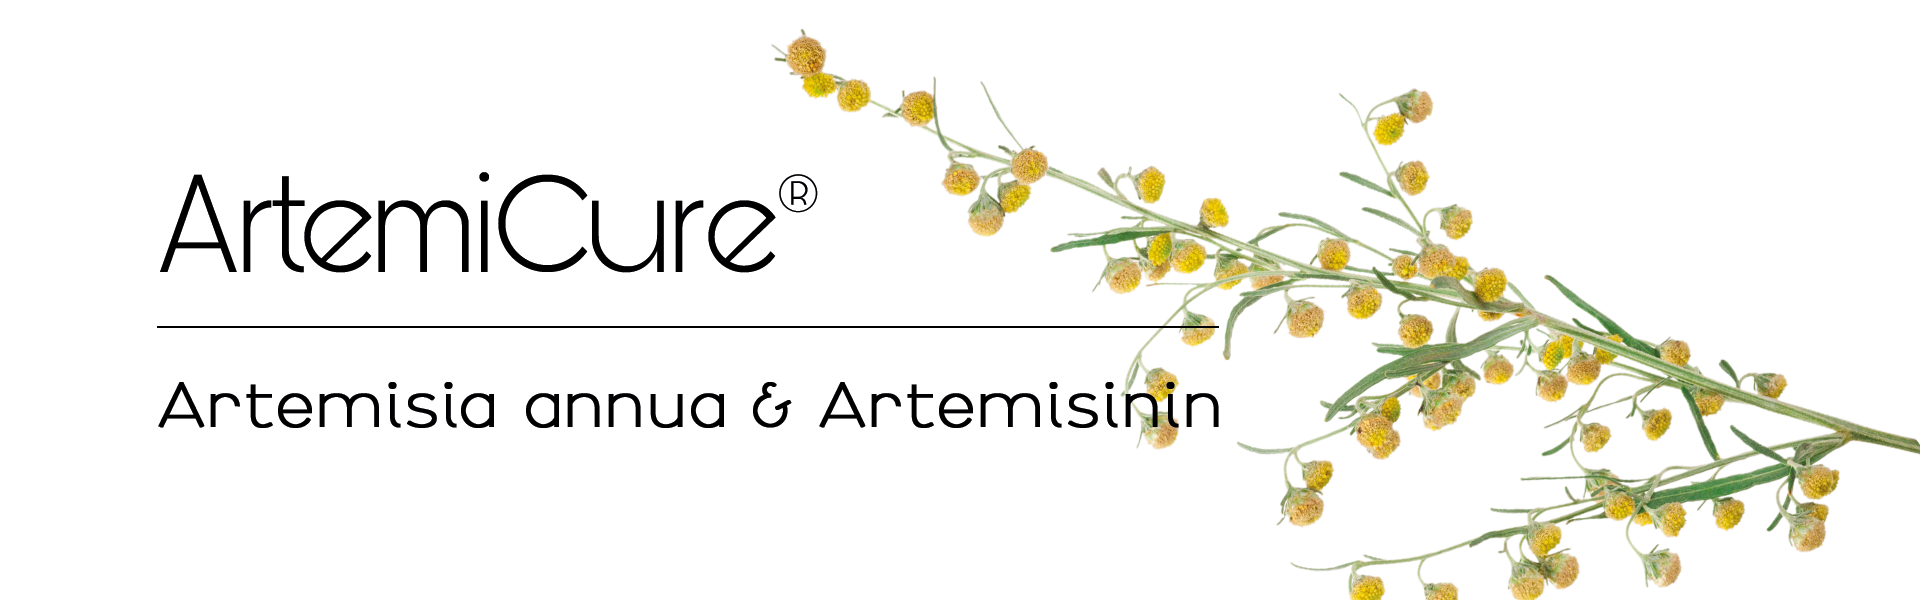 Artemisia annua, Lesen Sie weiter, und erfahren Sie mehr über Anwendung, Herstellung, Herkunft und krankheiten